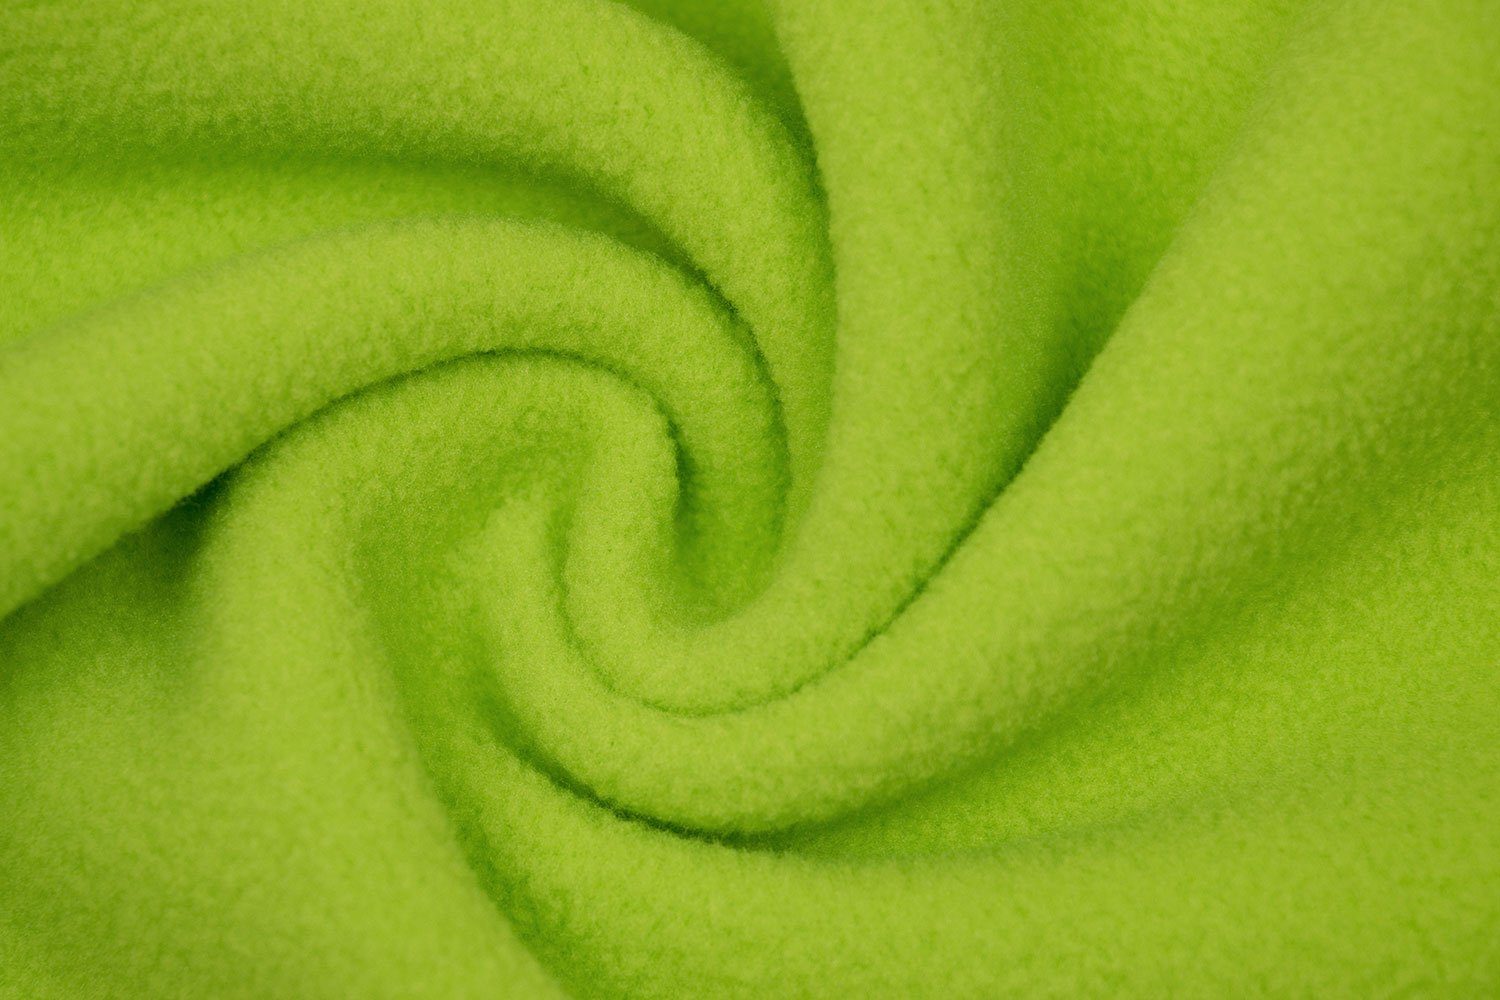 cm, apfelgrün 95 95 bis °C x 100% waschbar ZOLLNER, Polyester, waschbar Wohndecke, 130 170 bis °C,